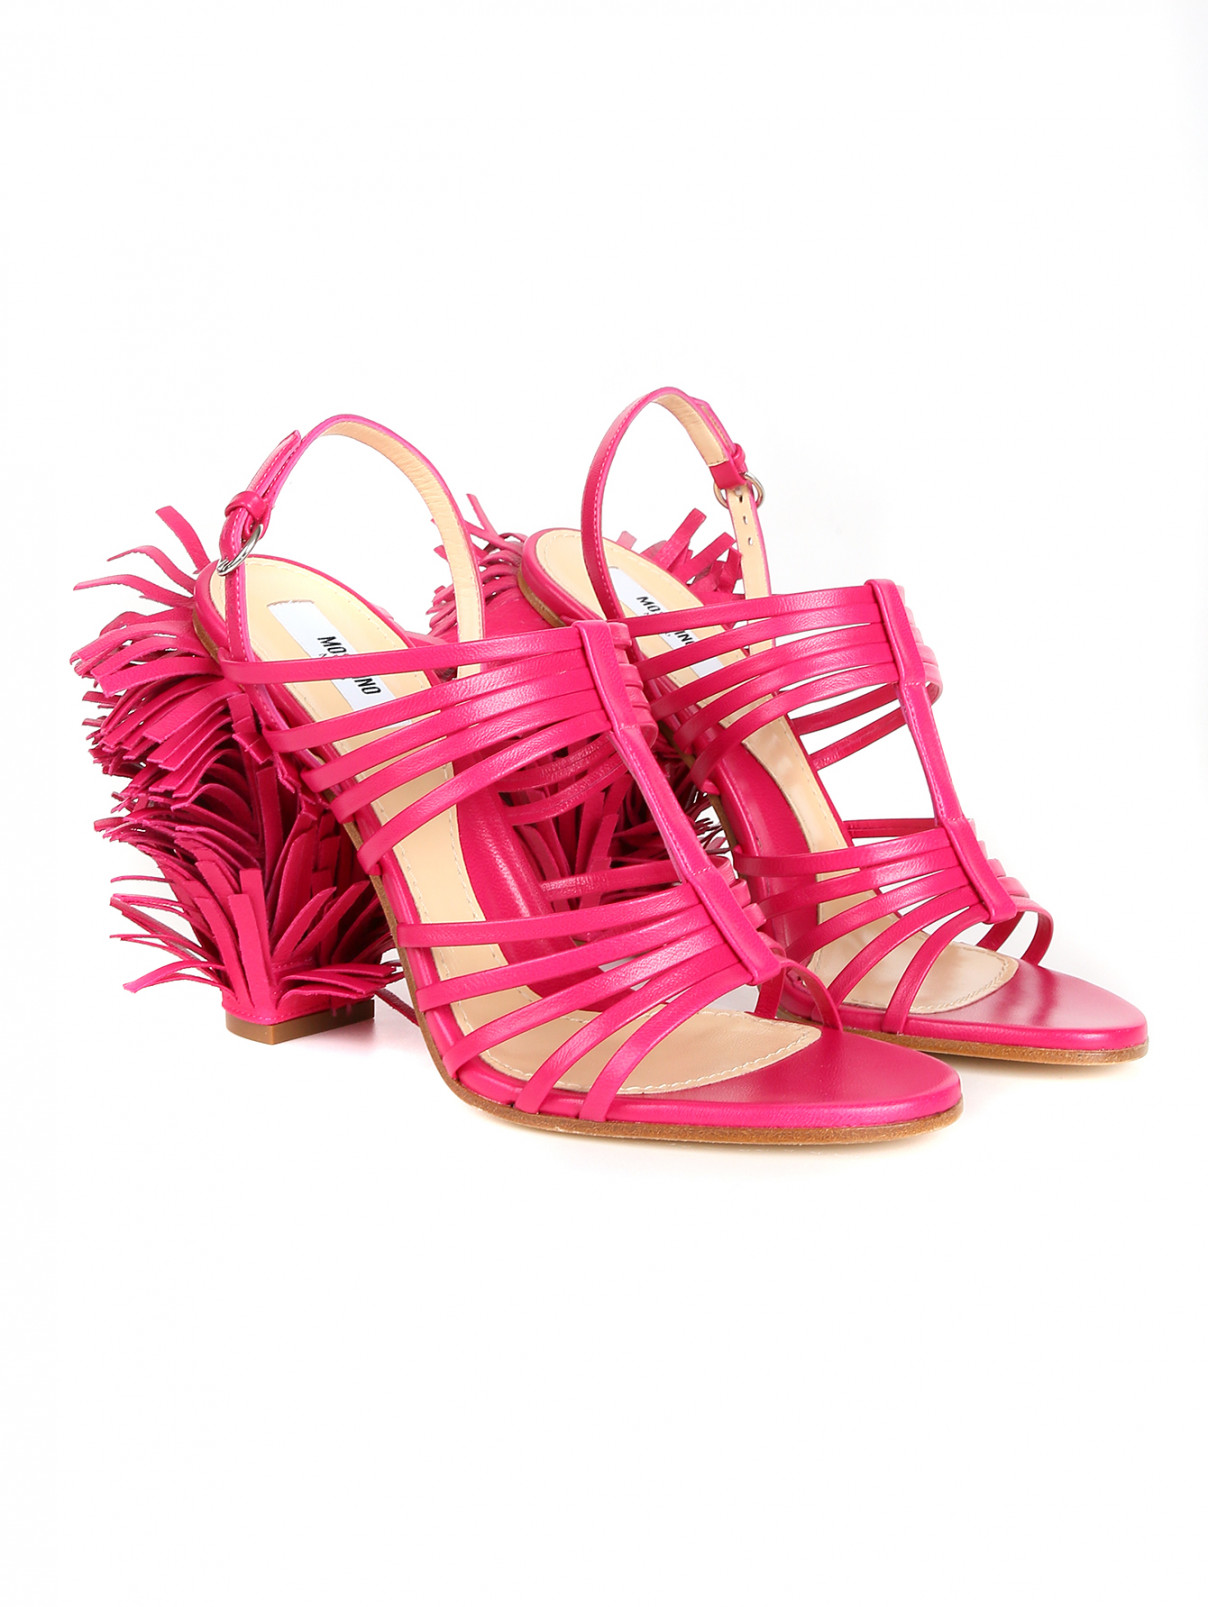 Босоножки из кожи с бахромой на каблуке Moschino Couture  –  Общий вид  – Цвет:  Фиолетовый